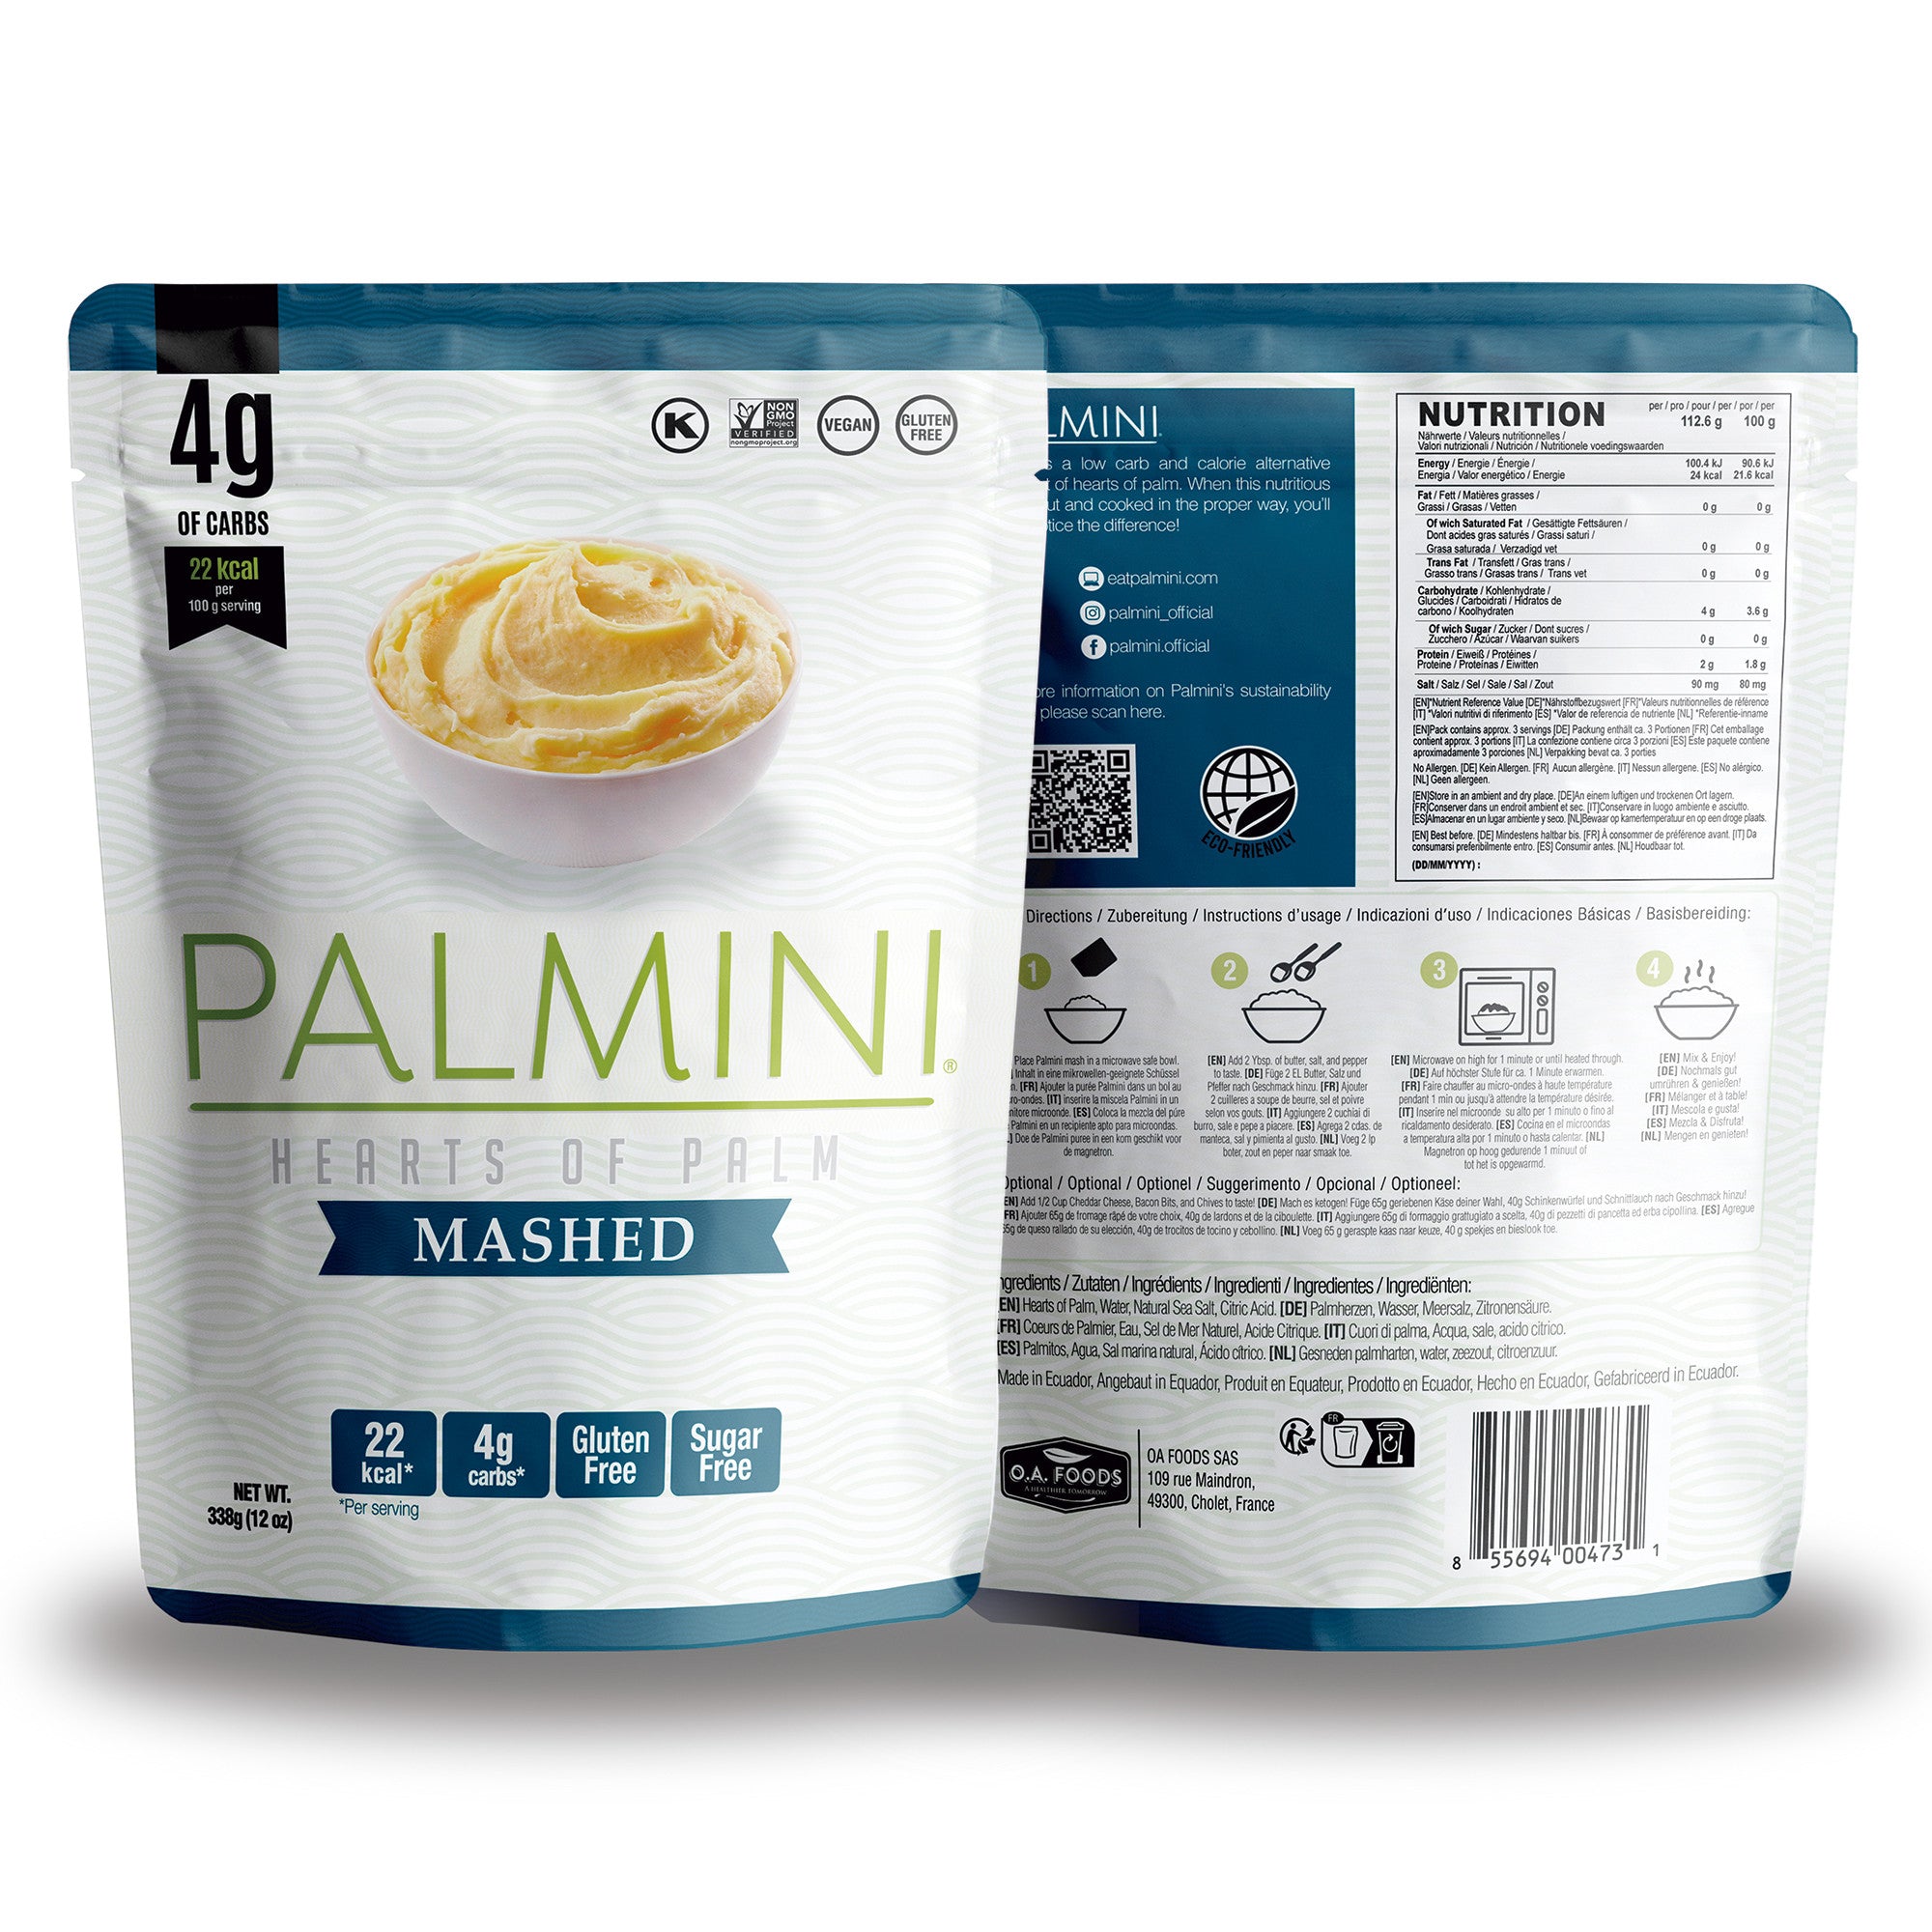 Palmini - Puré natural - 4 g de carbohidratos - Sin gluten - Paquete de 340 g